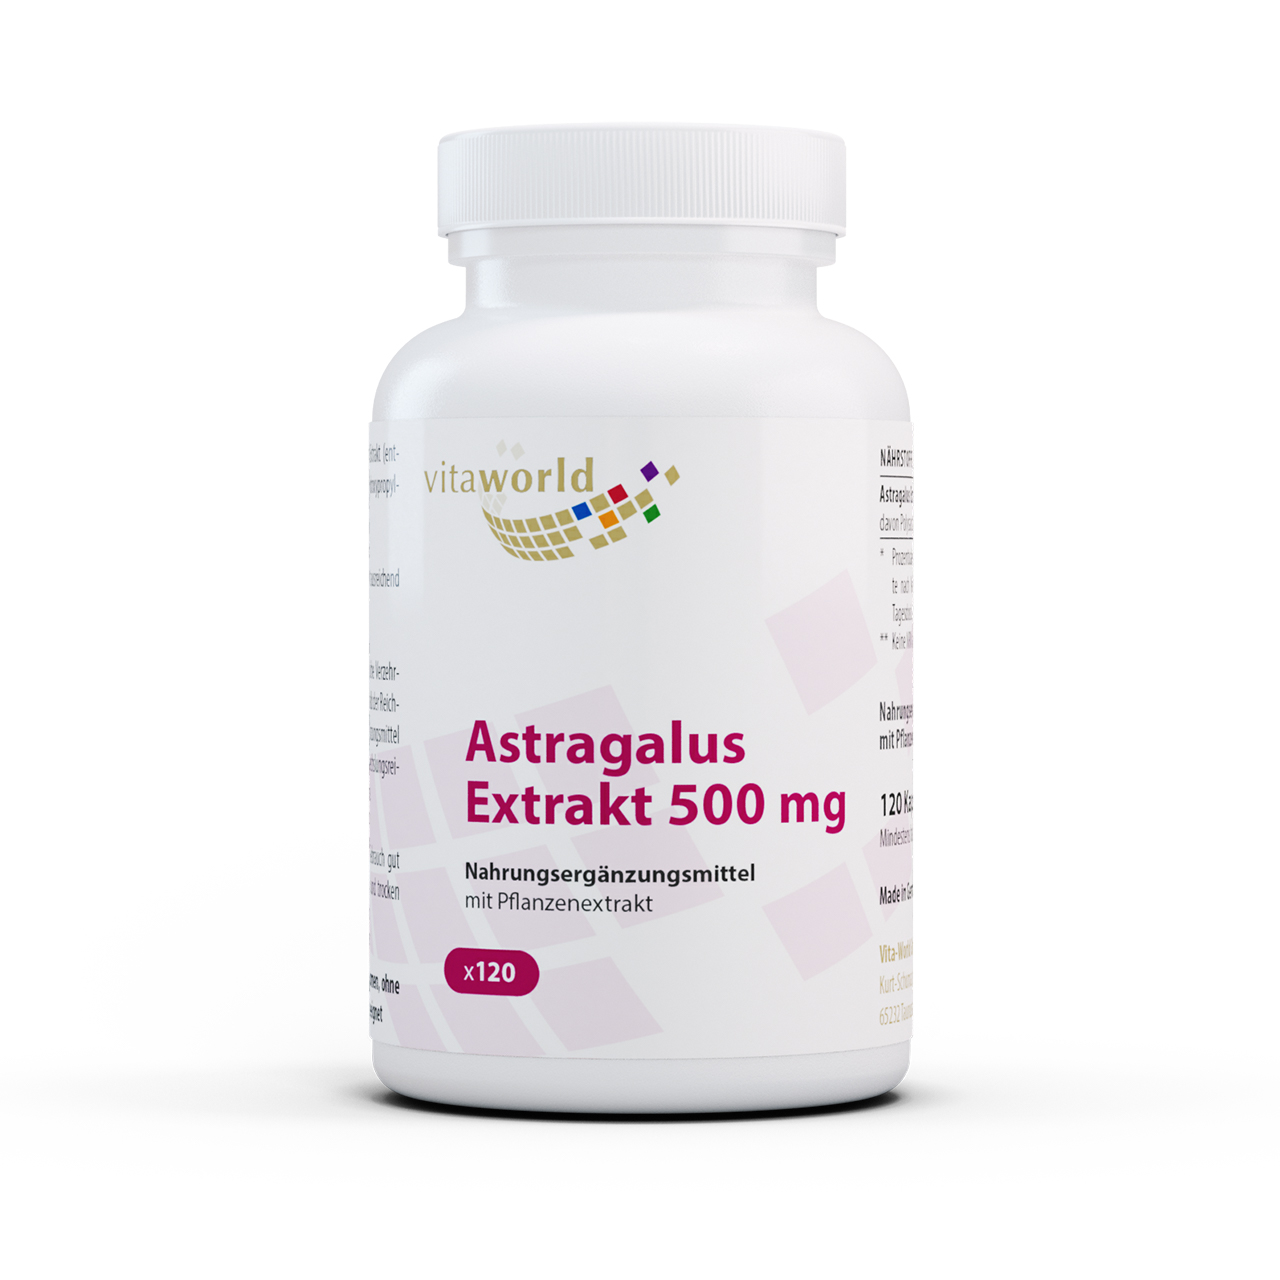 Vitaworld Astragalus Extrakt 500 mg | 120 Kapseln | vegan | gluten- und laktosefrei